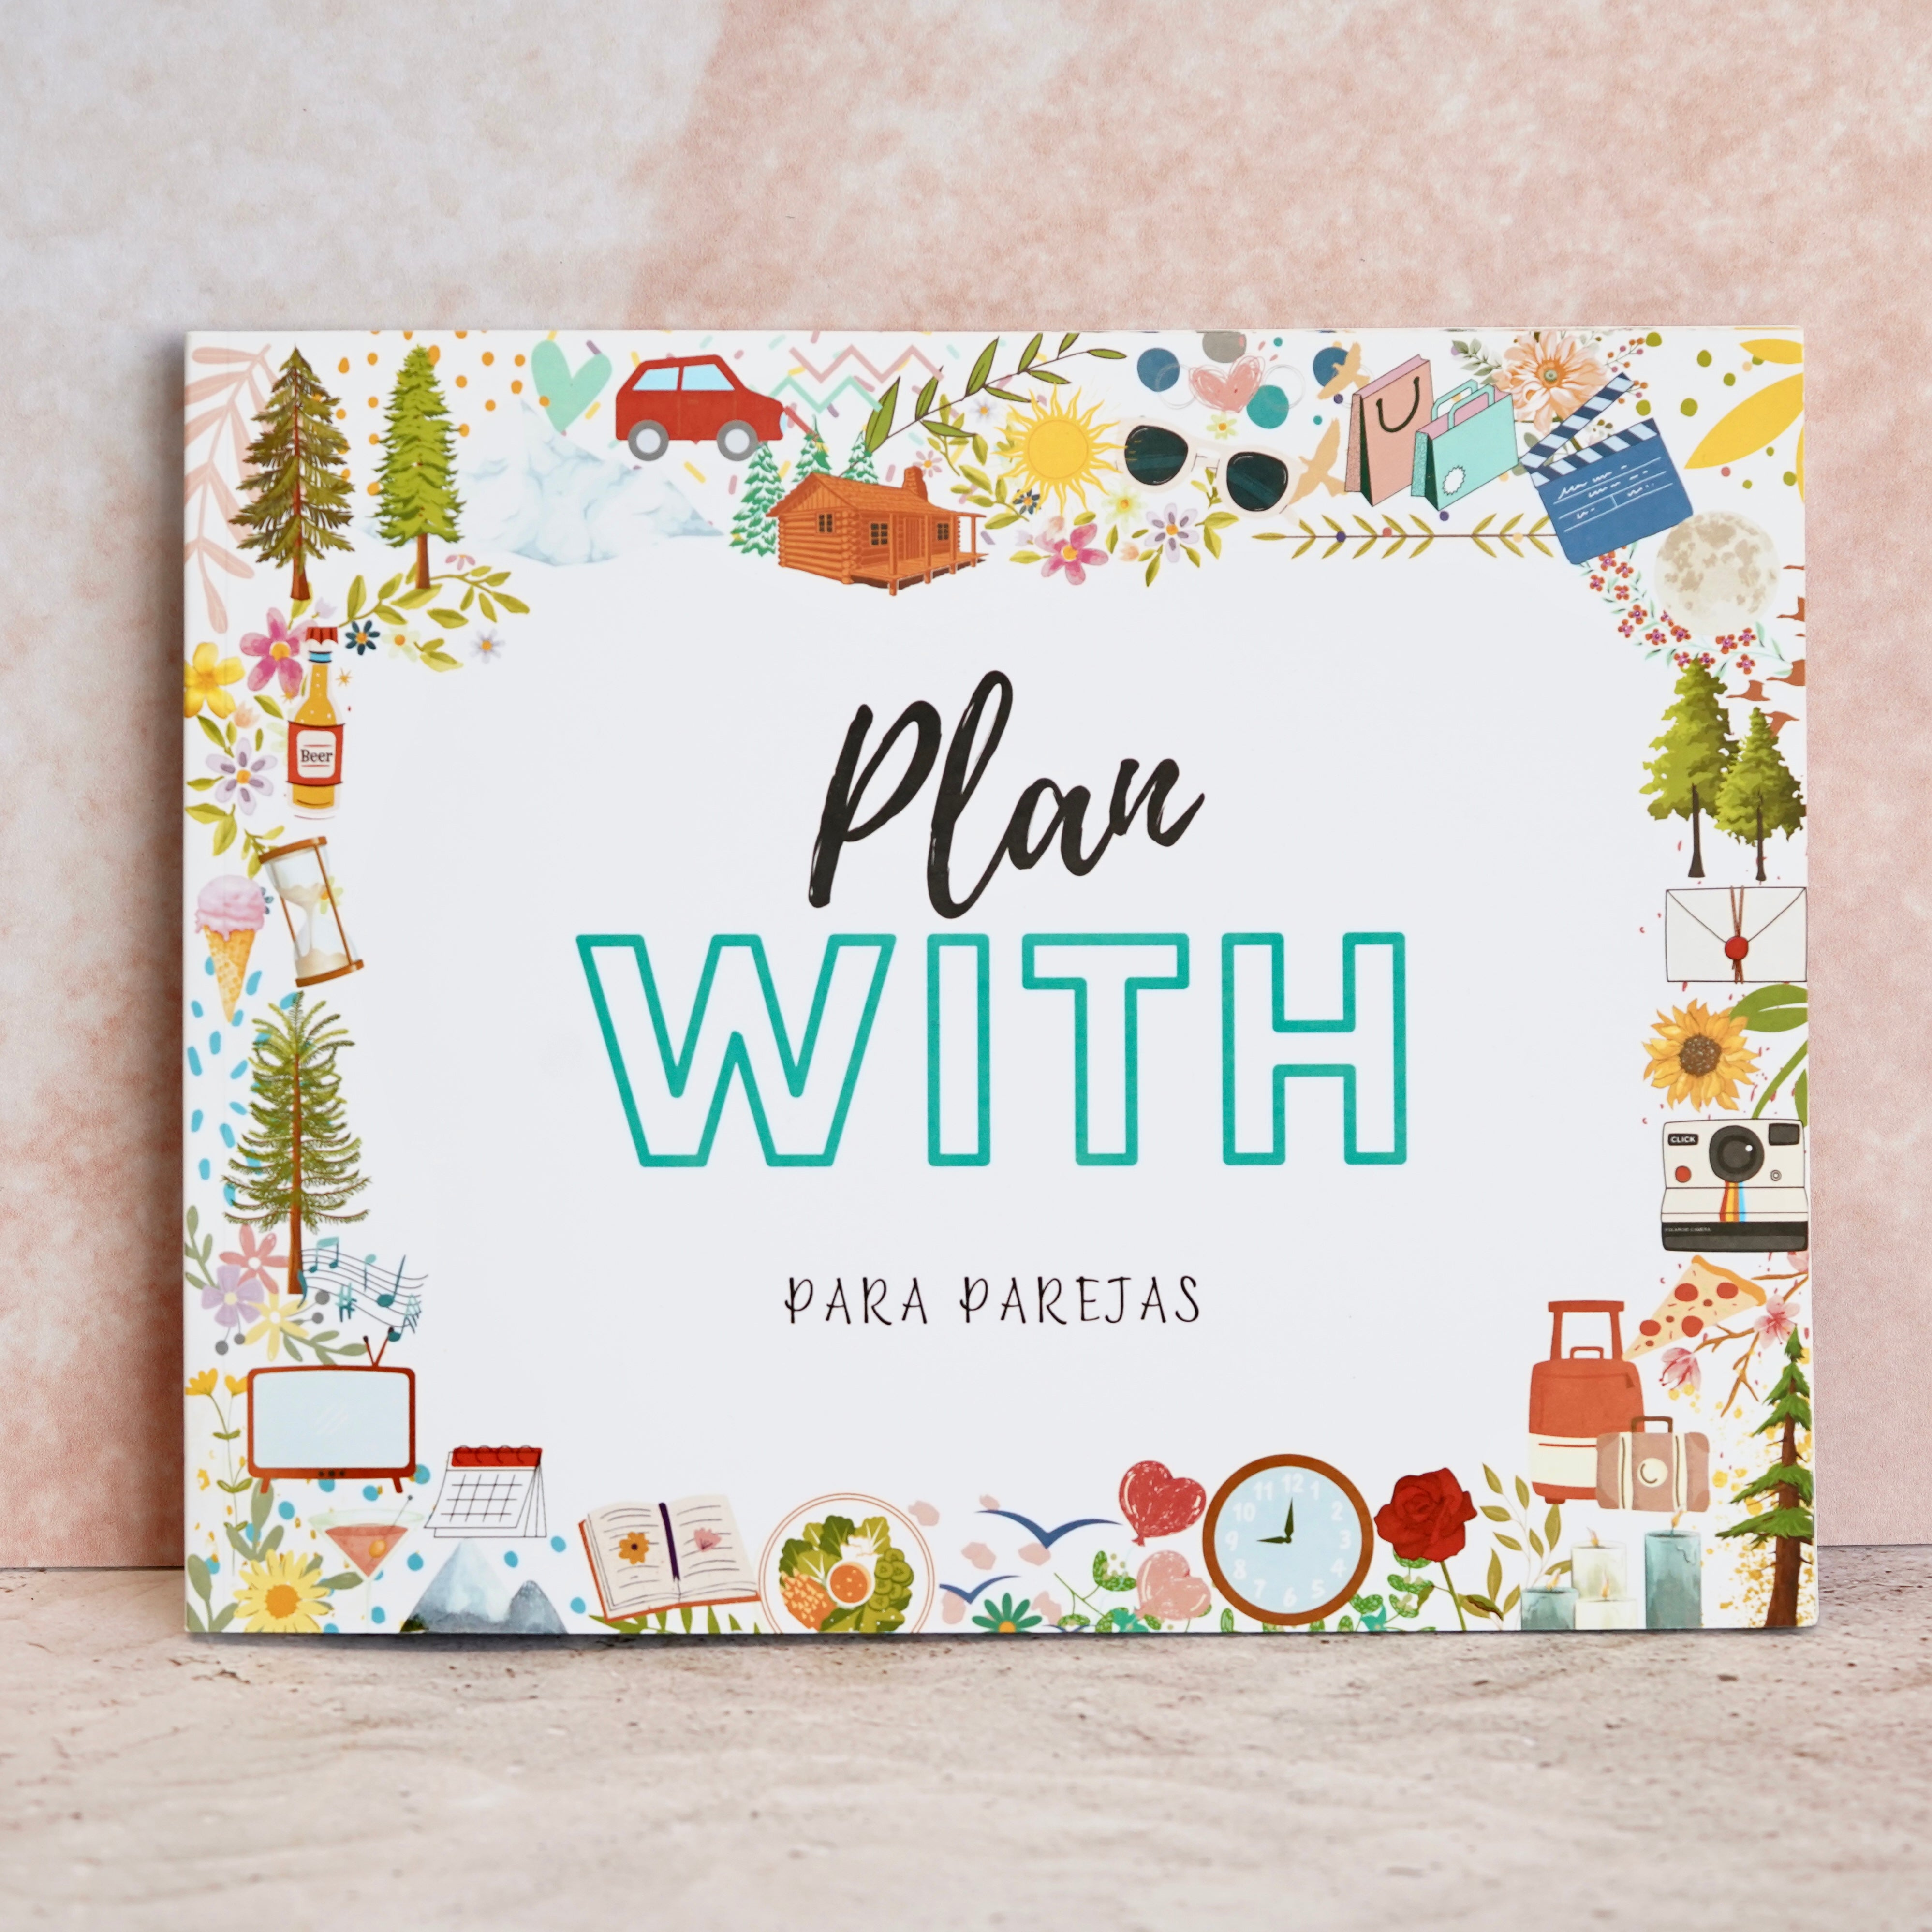 Pacote Placa com palavras personalizáveis ​​com fotos + Plano Com Livro com 50 planos de casal